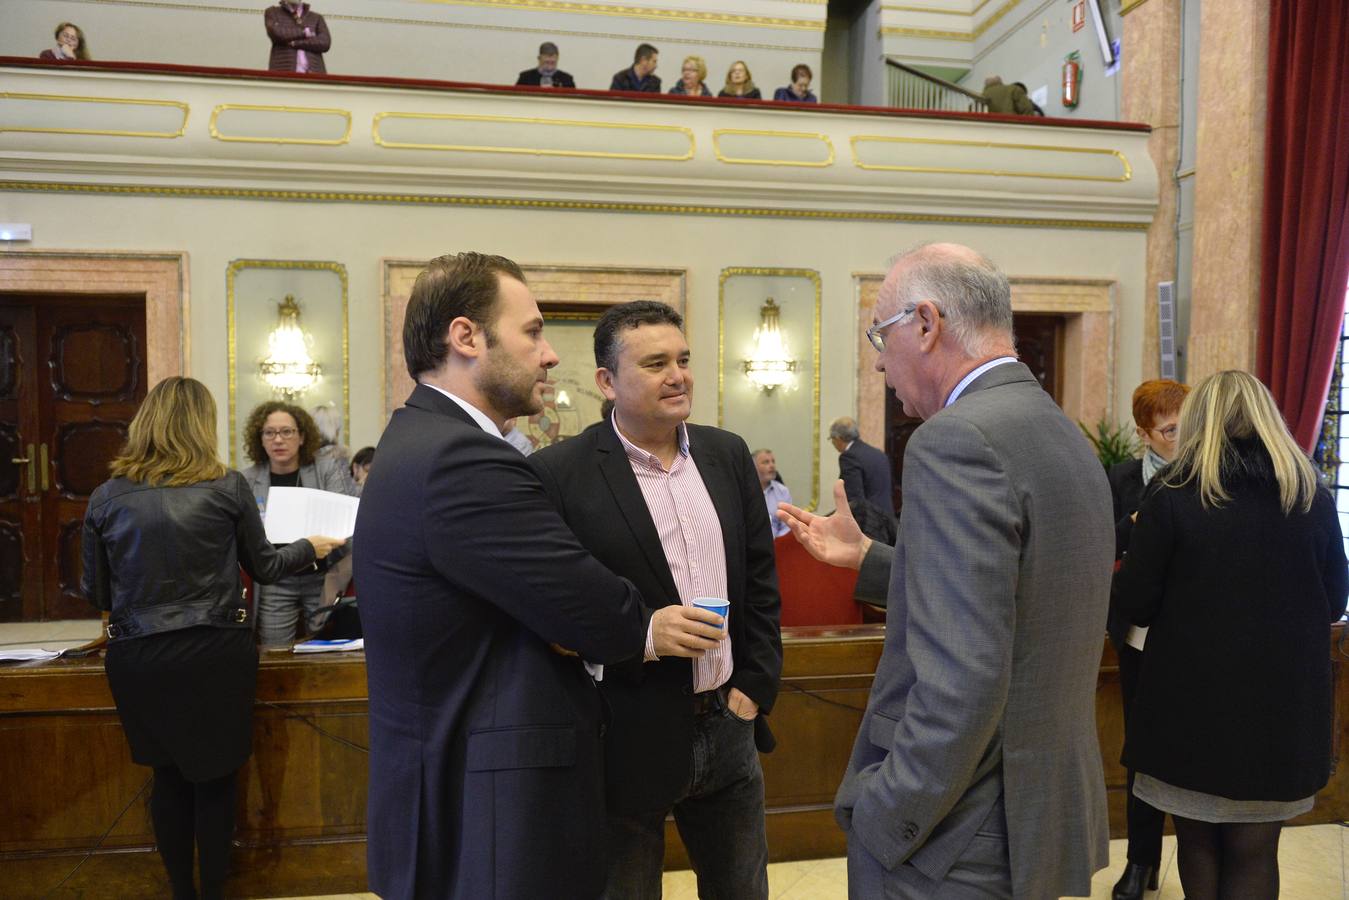 La concejal de Tráfico anuncia en el Pleno de Murcia la creación de una mesa de trabajo para acordar una ordenanza 